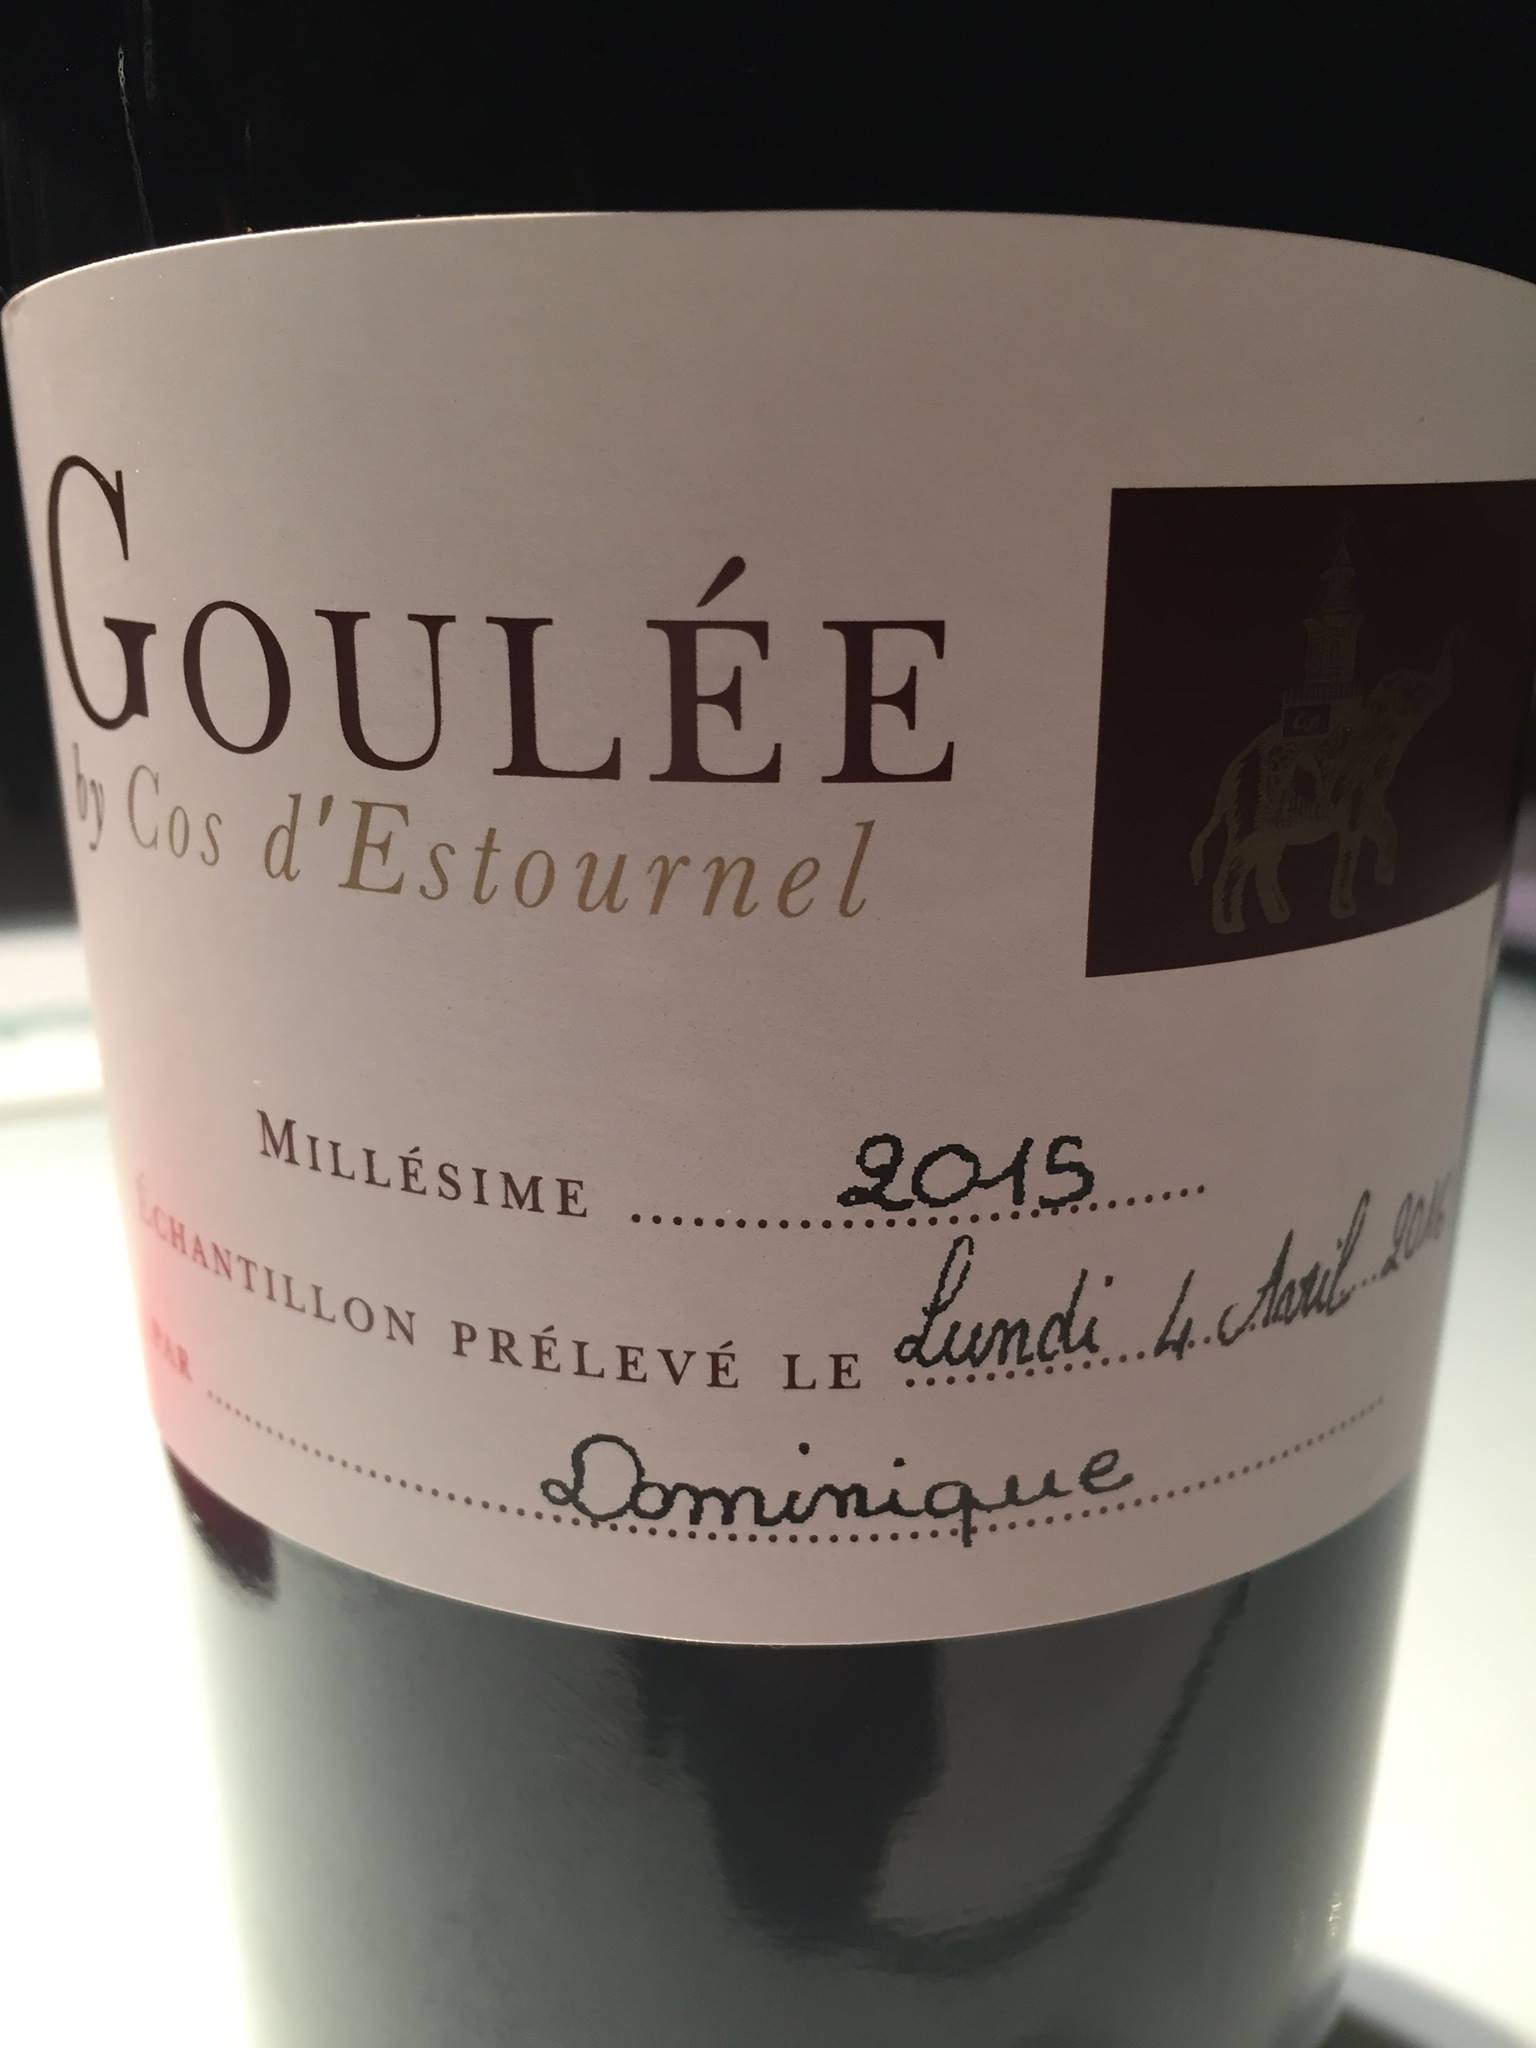 Goulée by Cos d’Estournel 2015 – Médoc